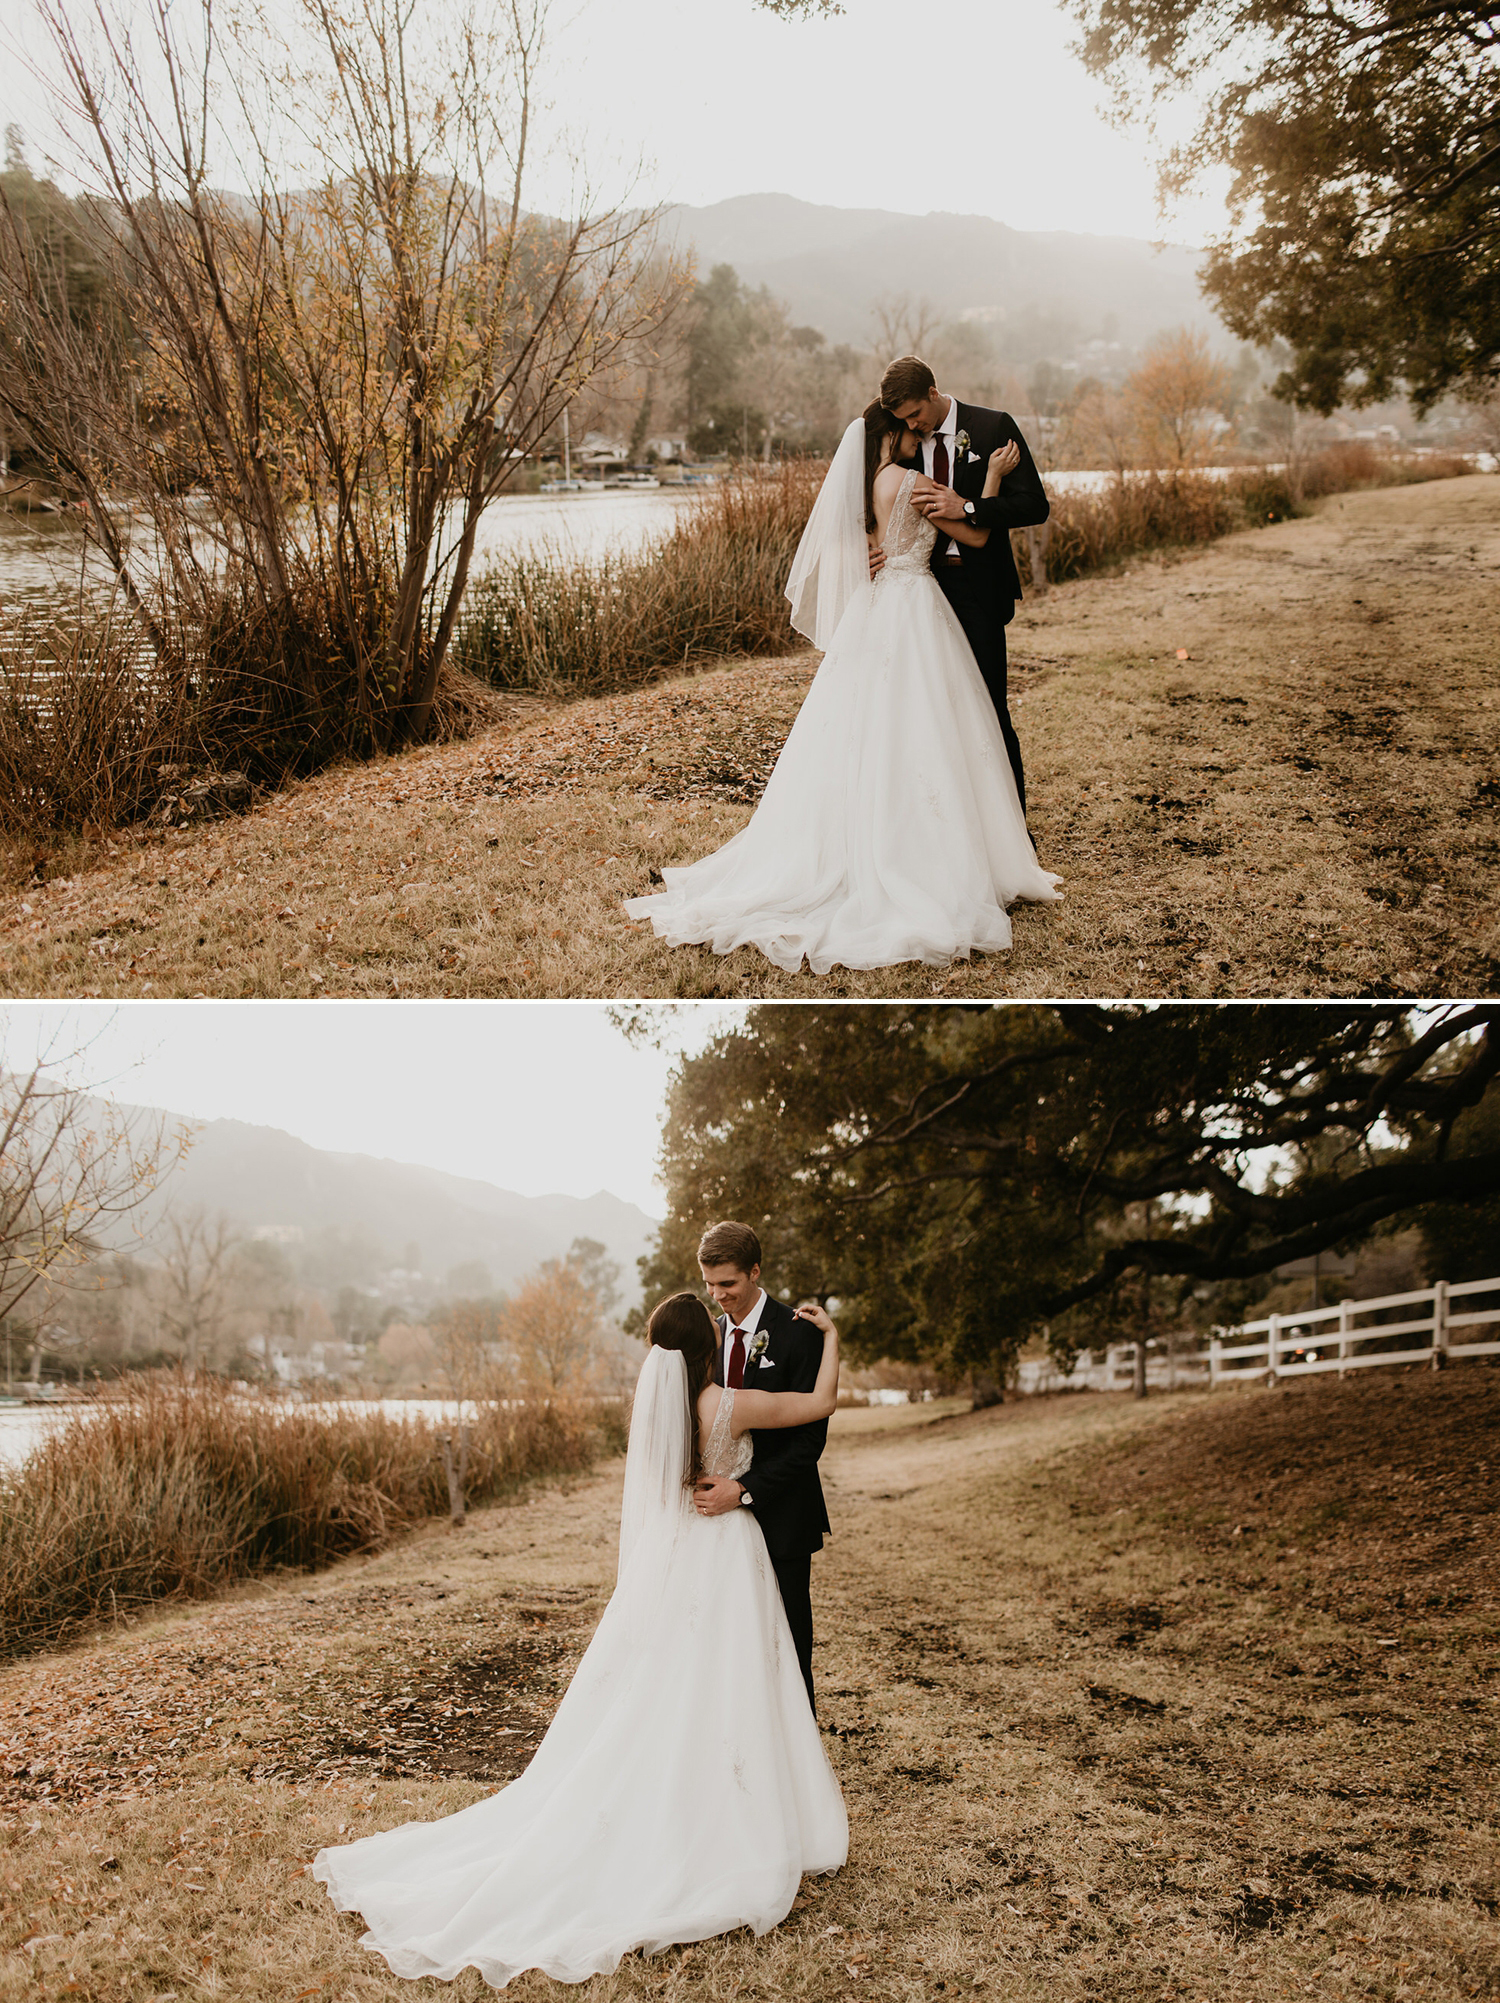 Bree and Logans Lodge at Malibou Lake wedding by Malibu Wedding Photographer, Kadi Tobin